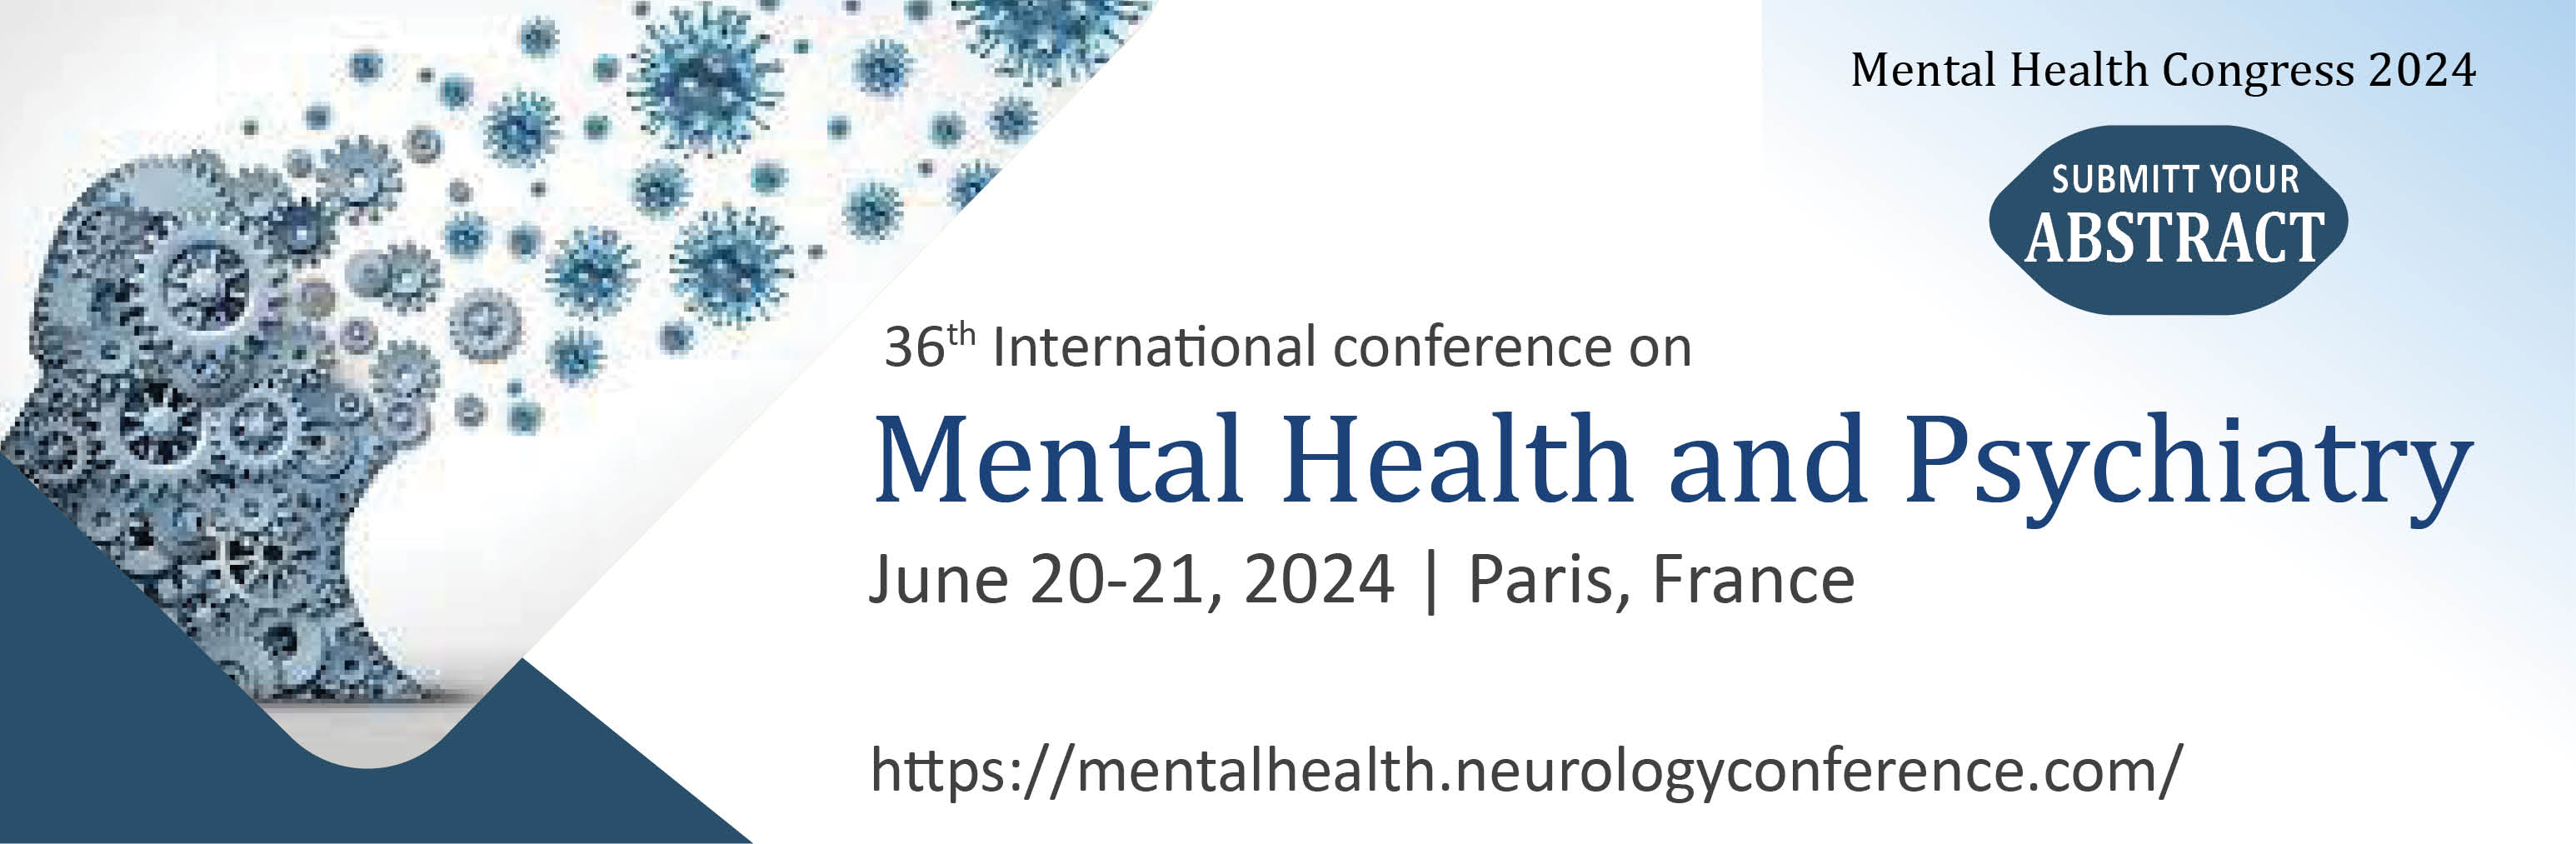 Mental Health Congress 2024Mental Health Congress 2024